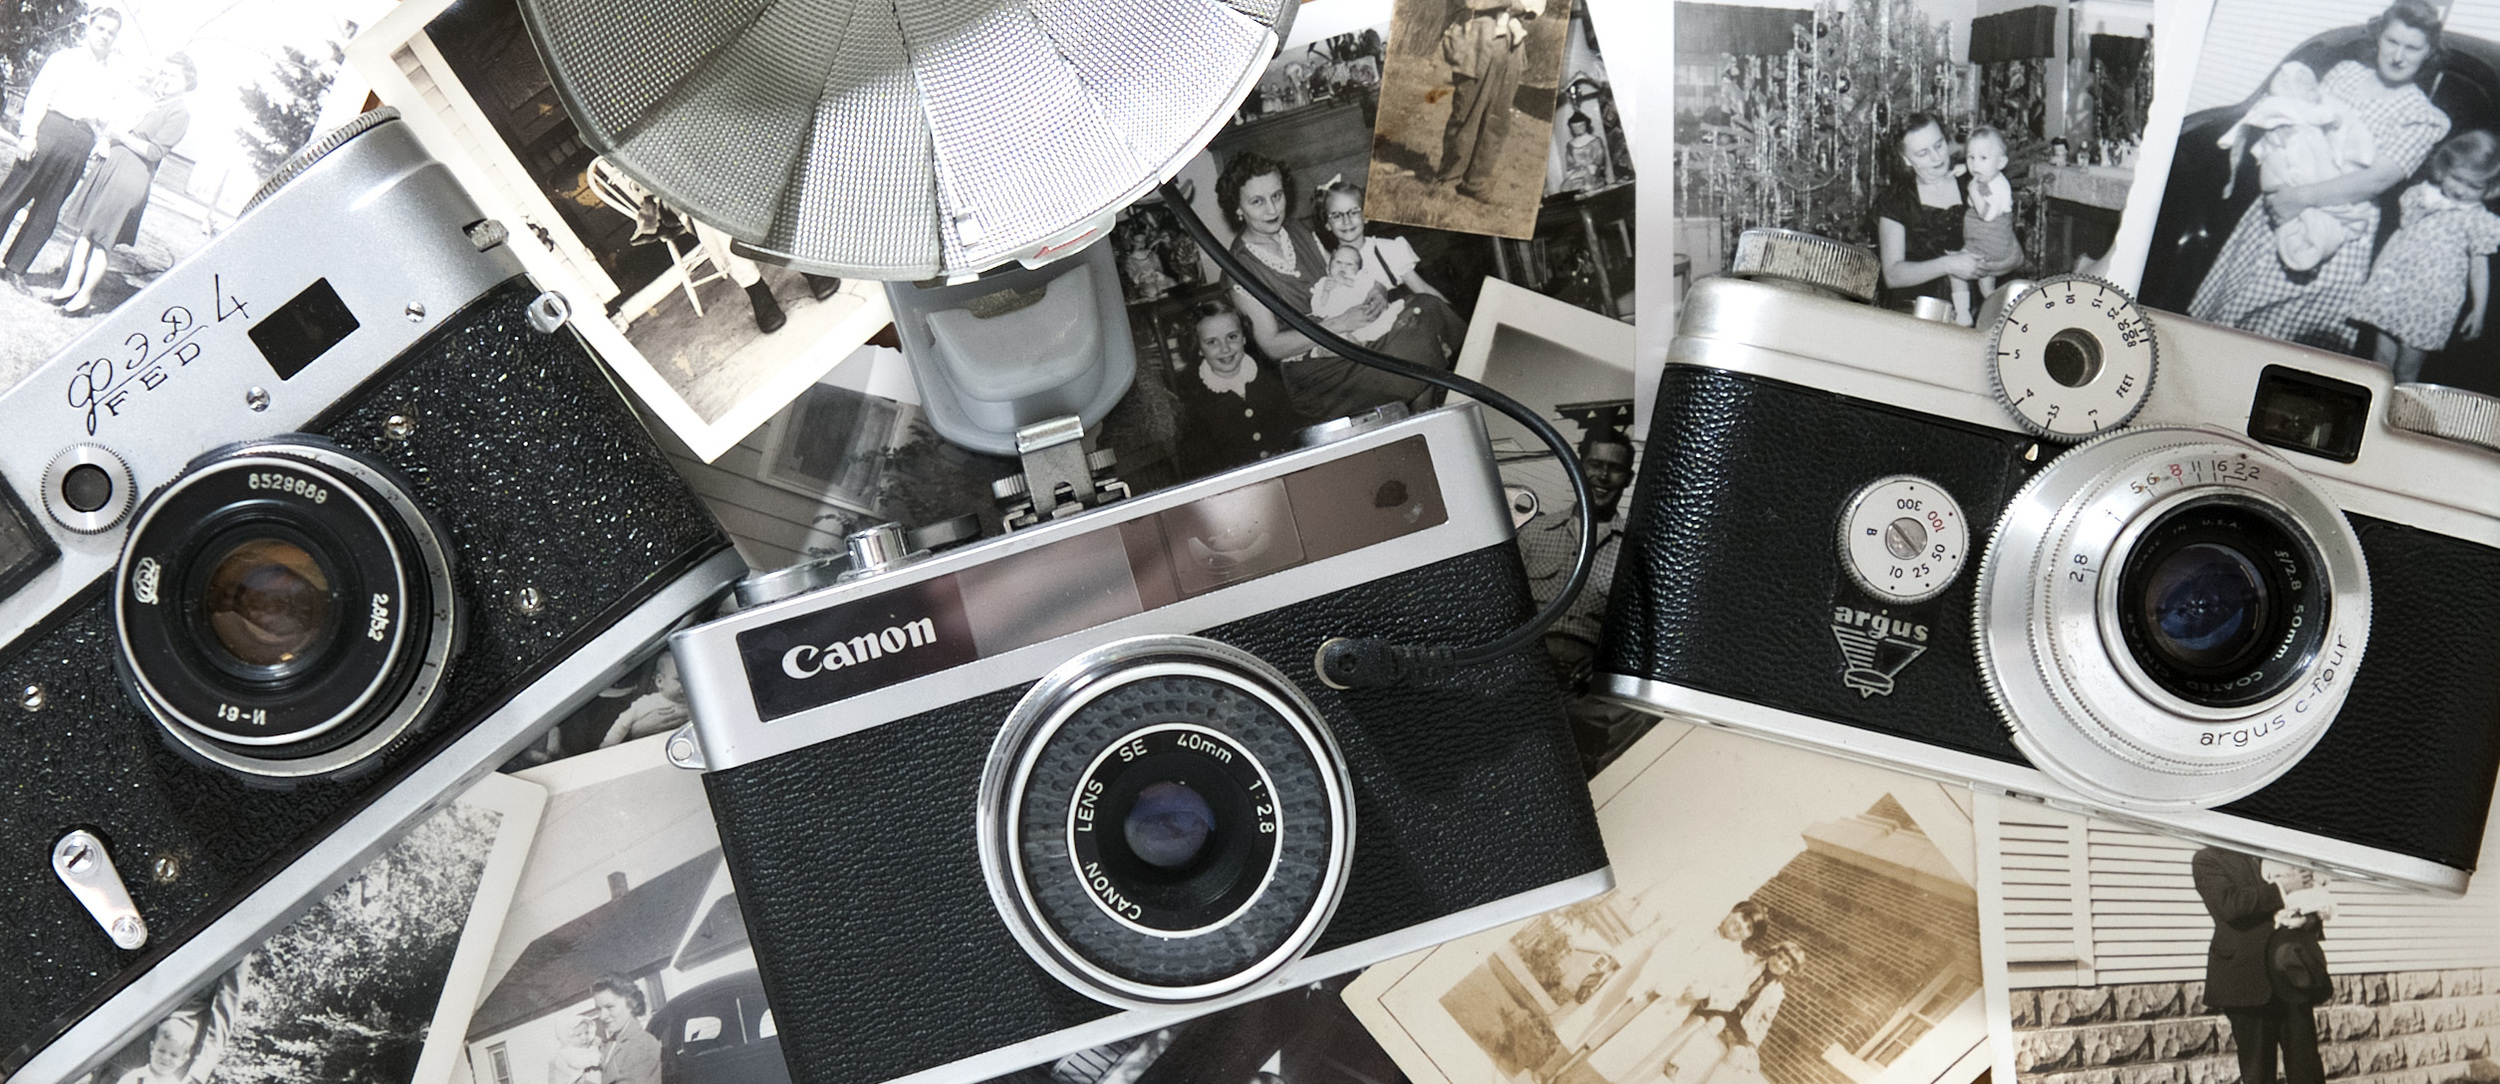 VintageCameras-006.jpg